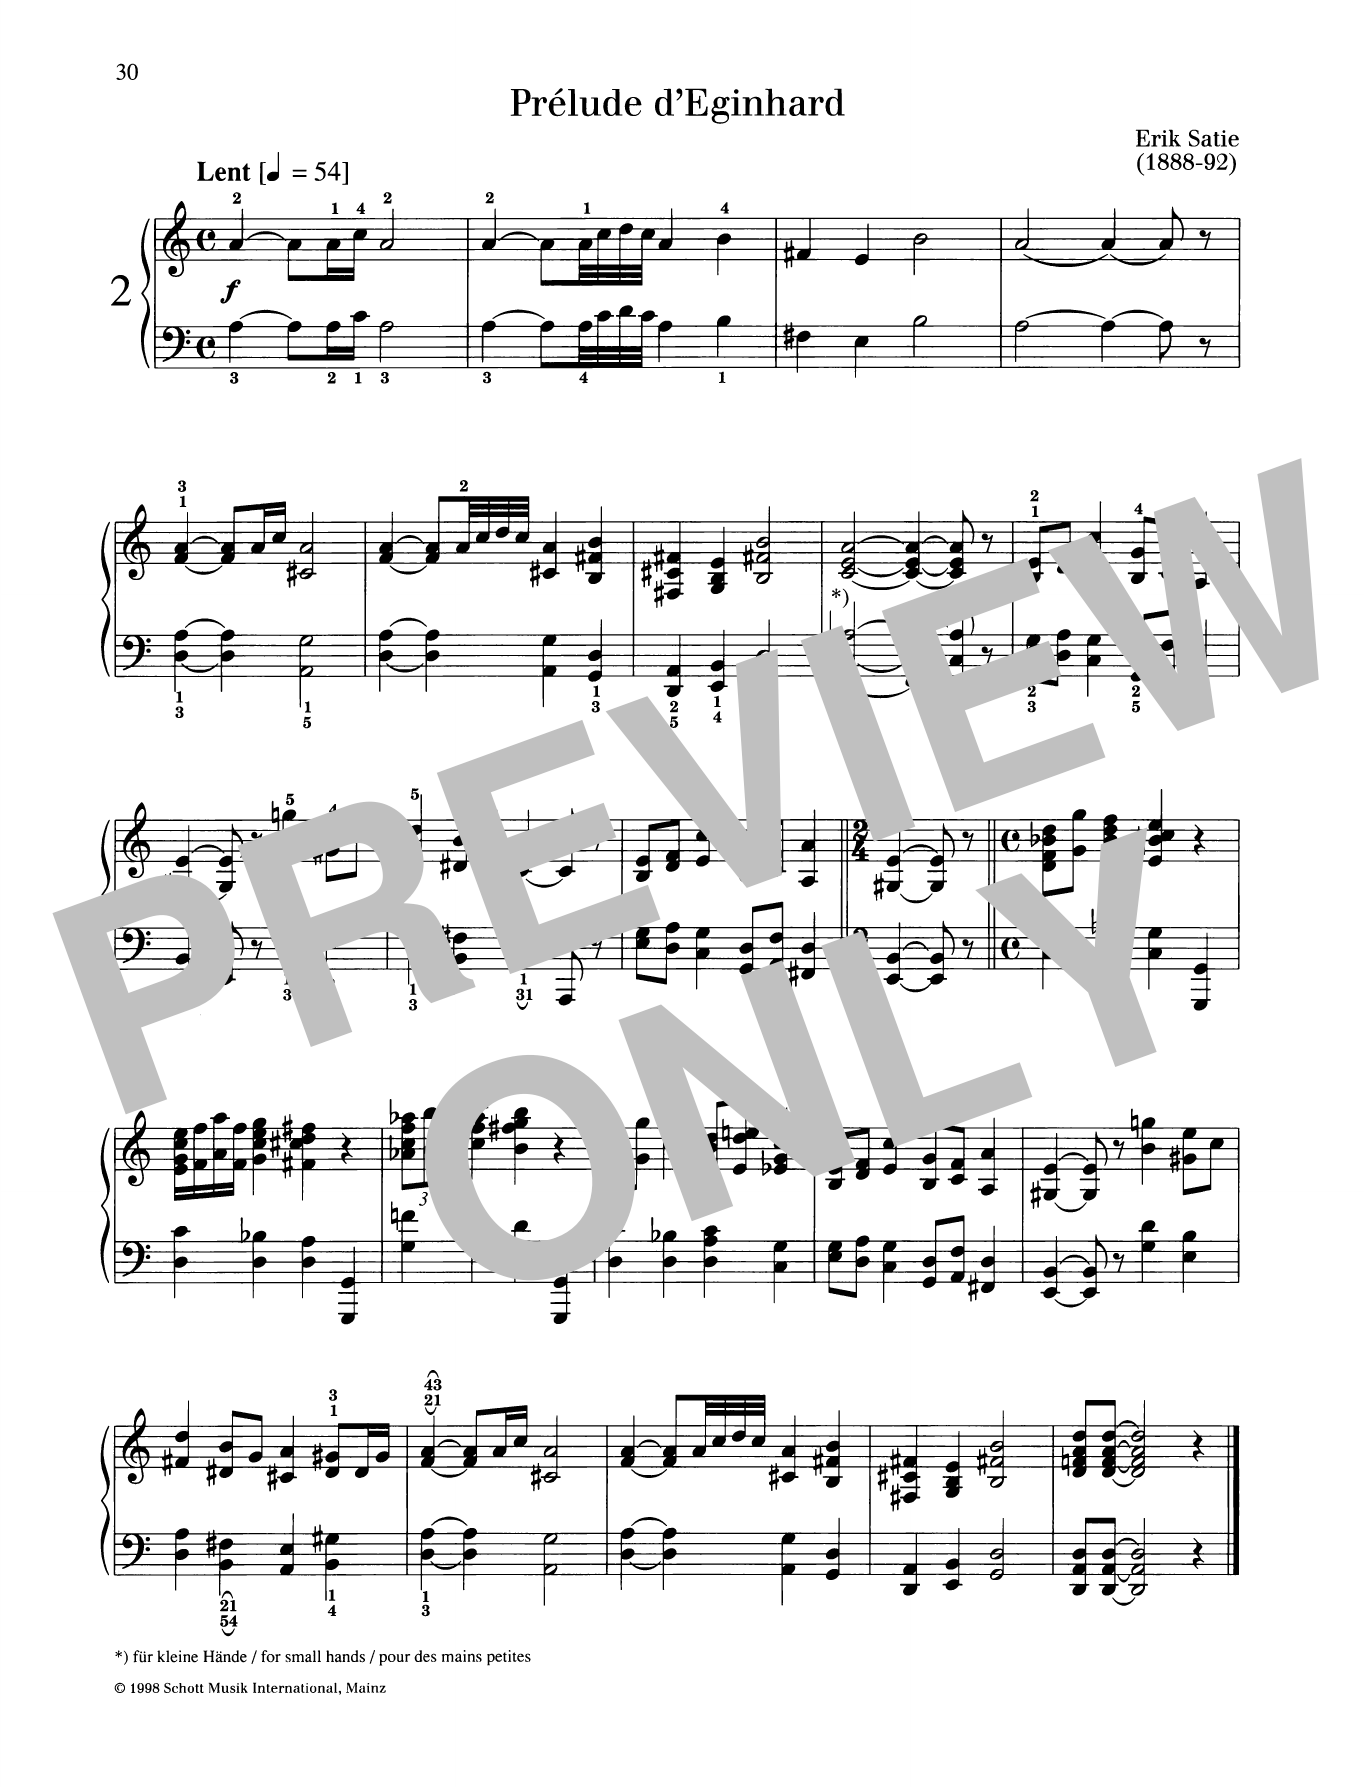 Prelude d'Eginhard sheet music